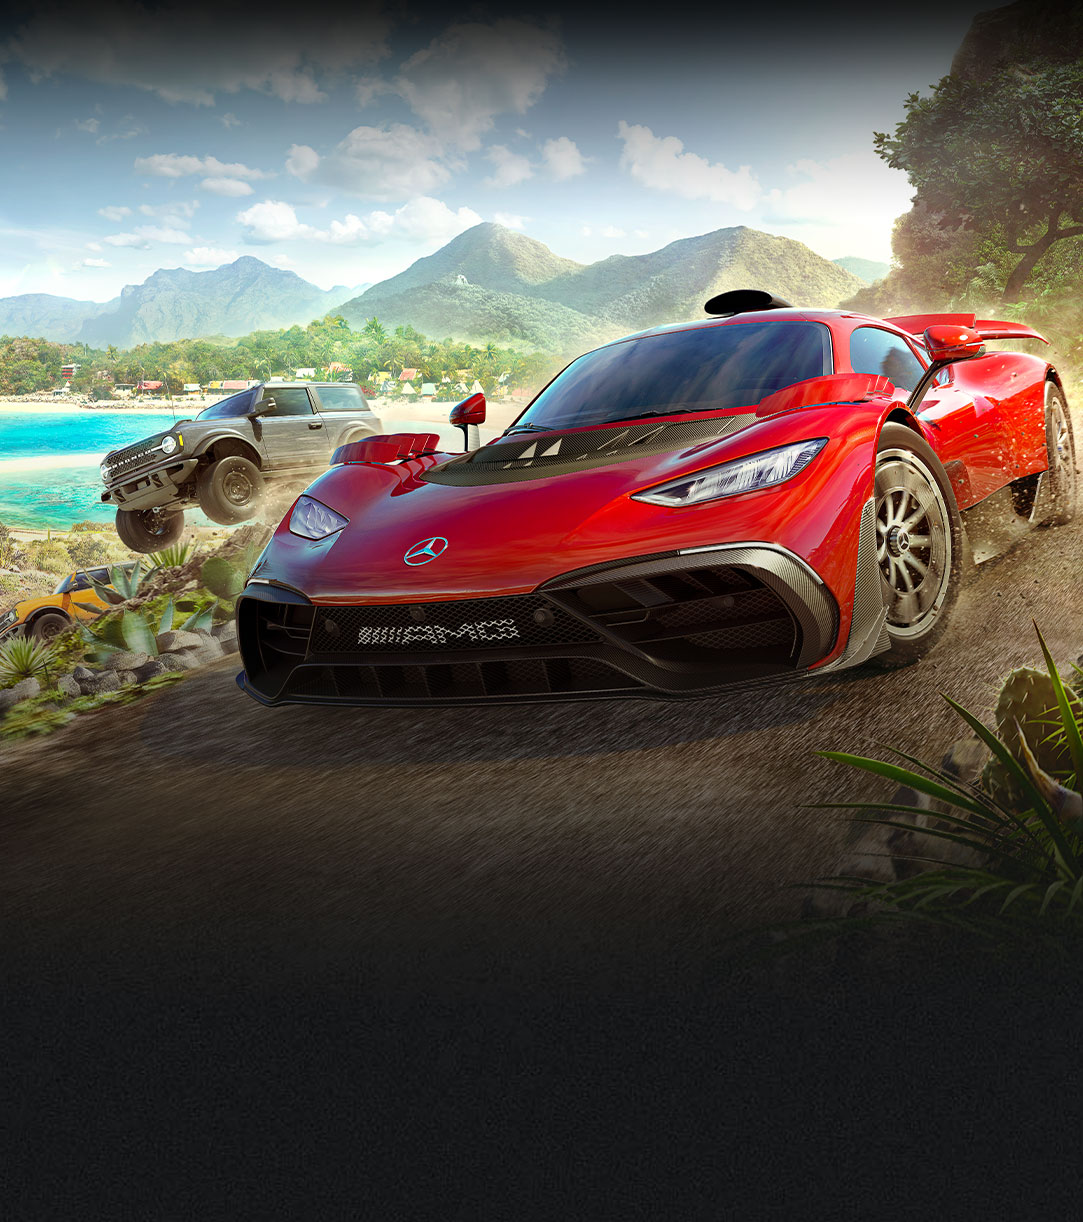 Forza Horizon 5:n autot liikkuvat nopeasti veden ja monien kasvien reunustamalla hiekkatiellä.